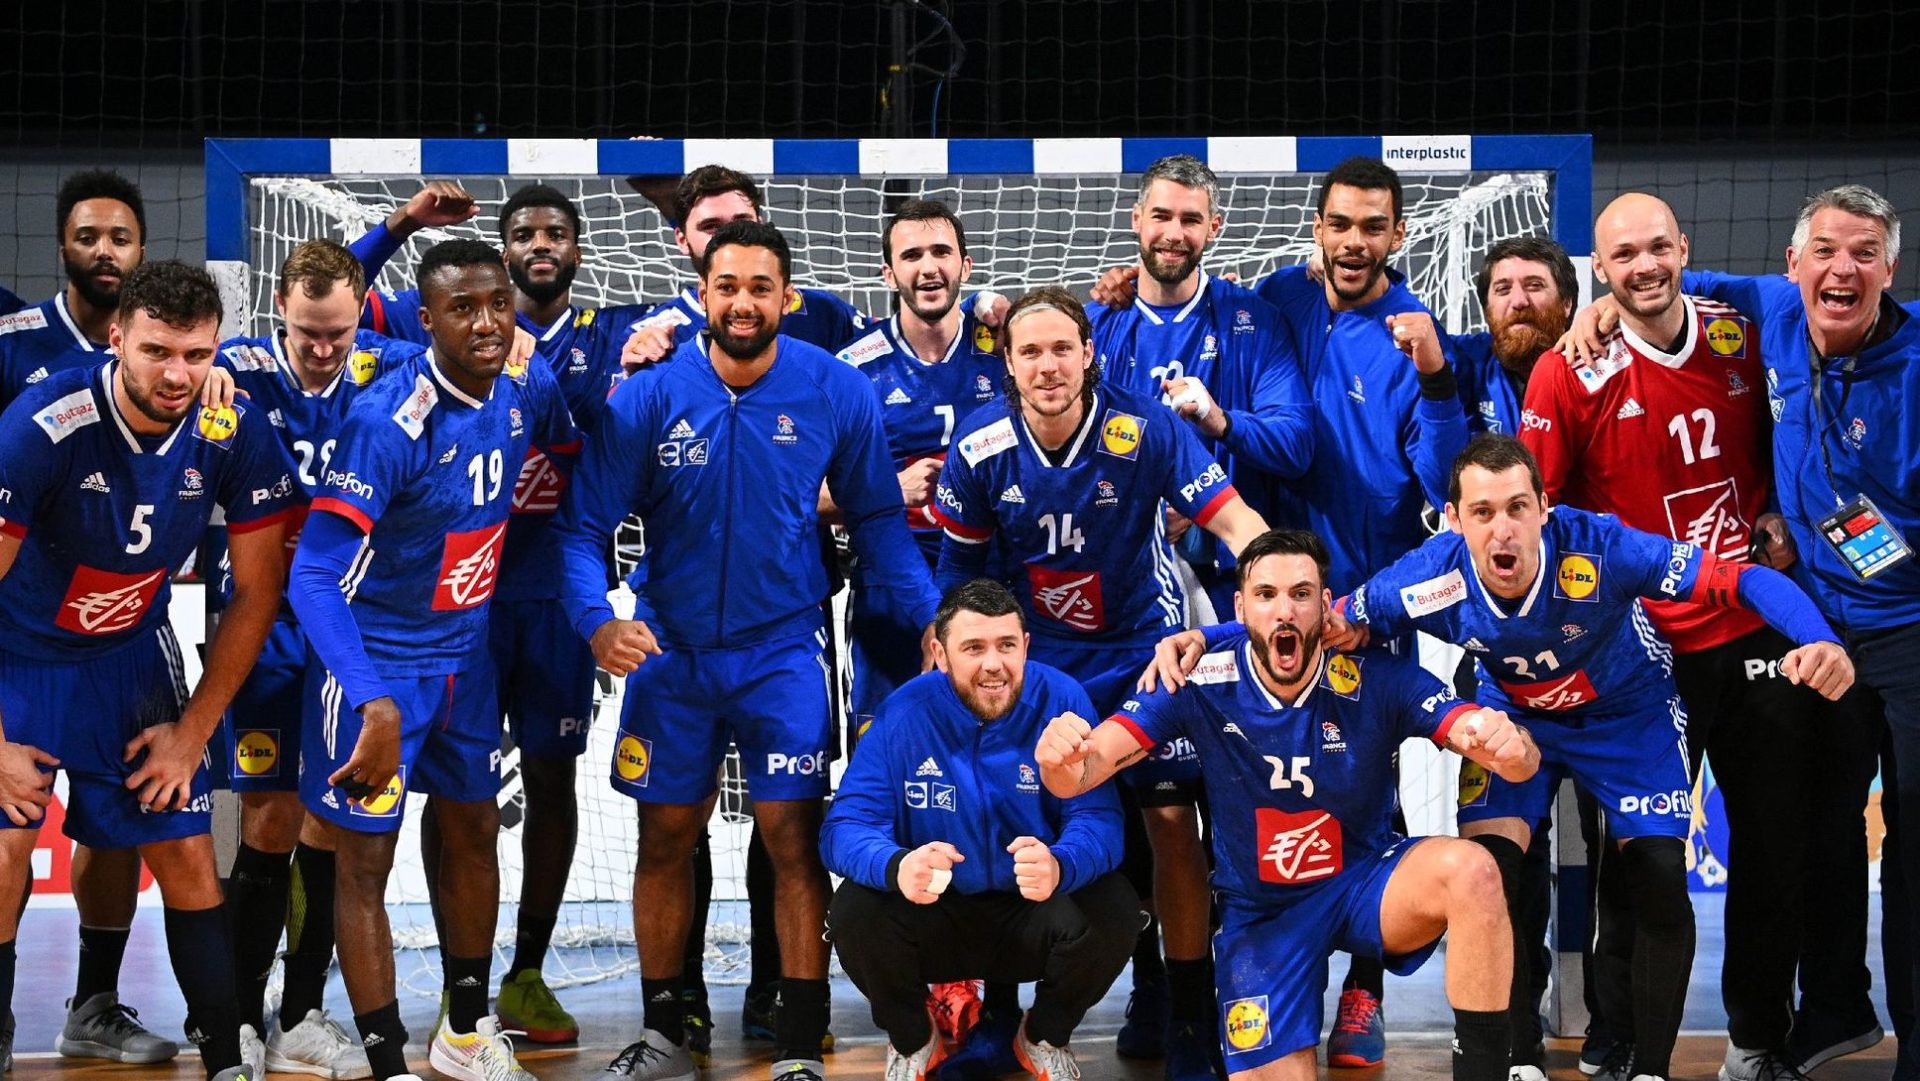 Lire la suite à propos de l’article Championnat d’Europe de Handball : Les bleus s’imposent face à la Croatie